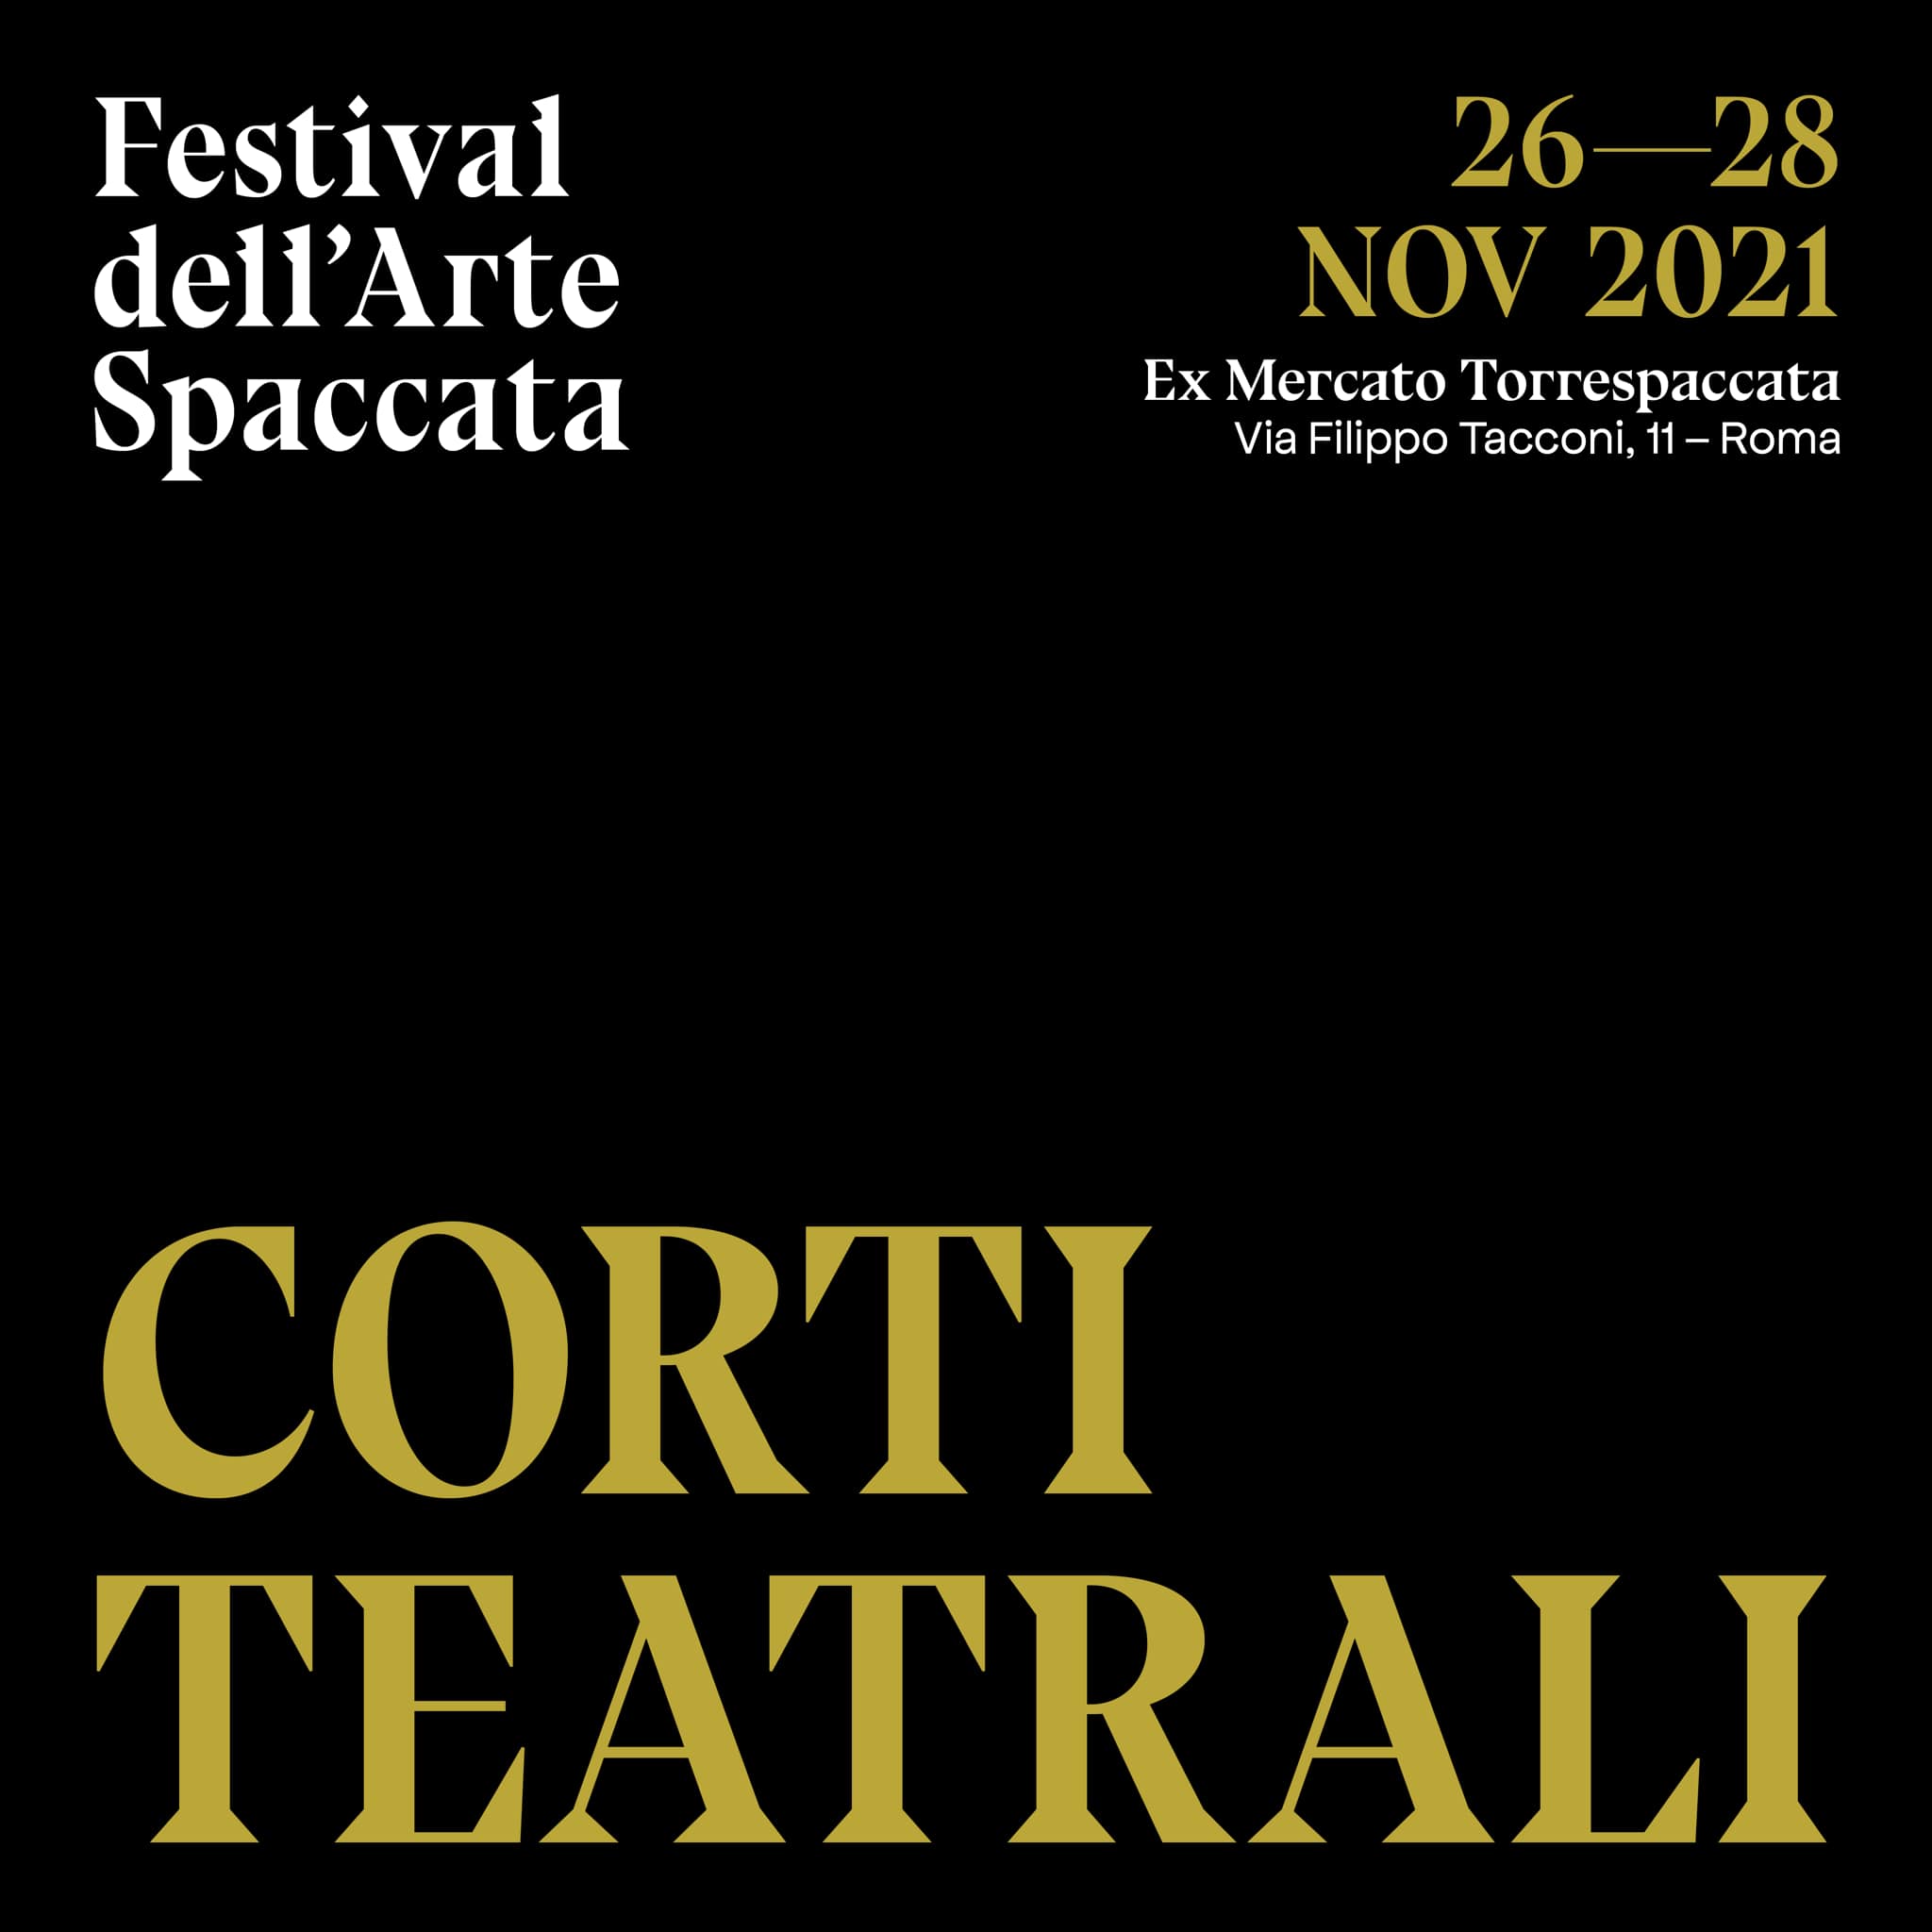 Festival dell'Arte Spaccata, Corti Teatrali, 26-28 novembre 2021